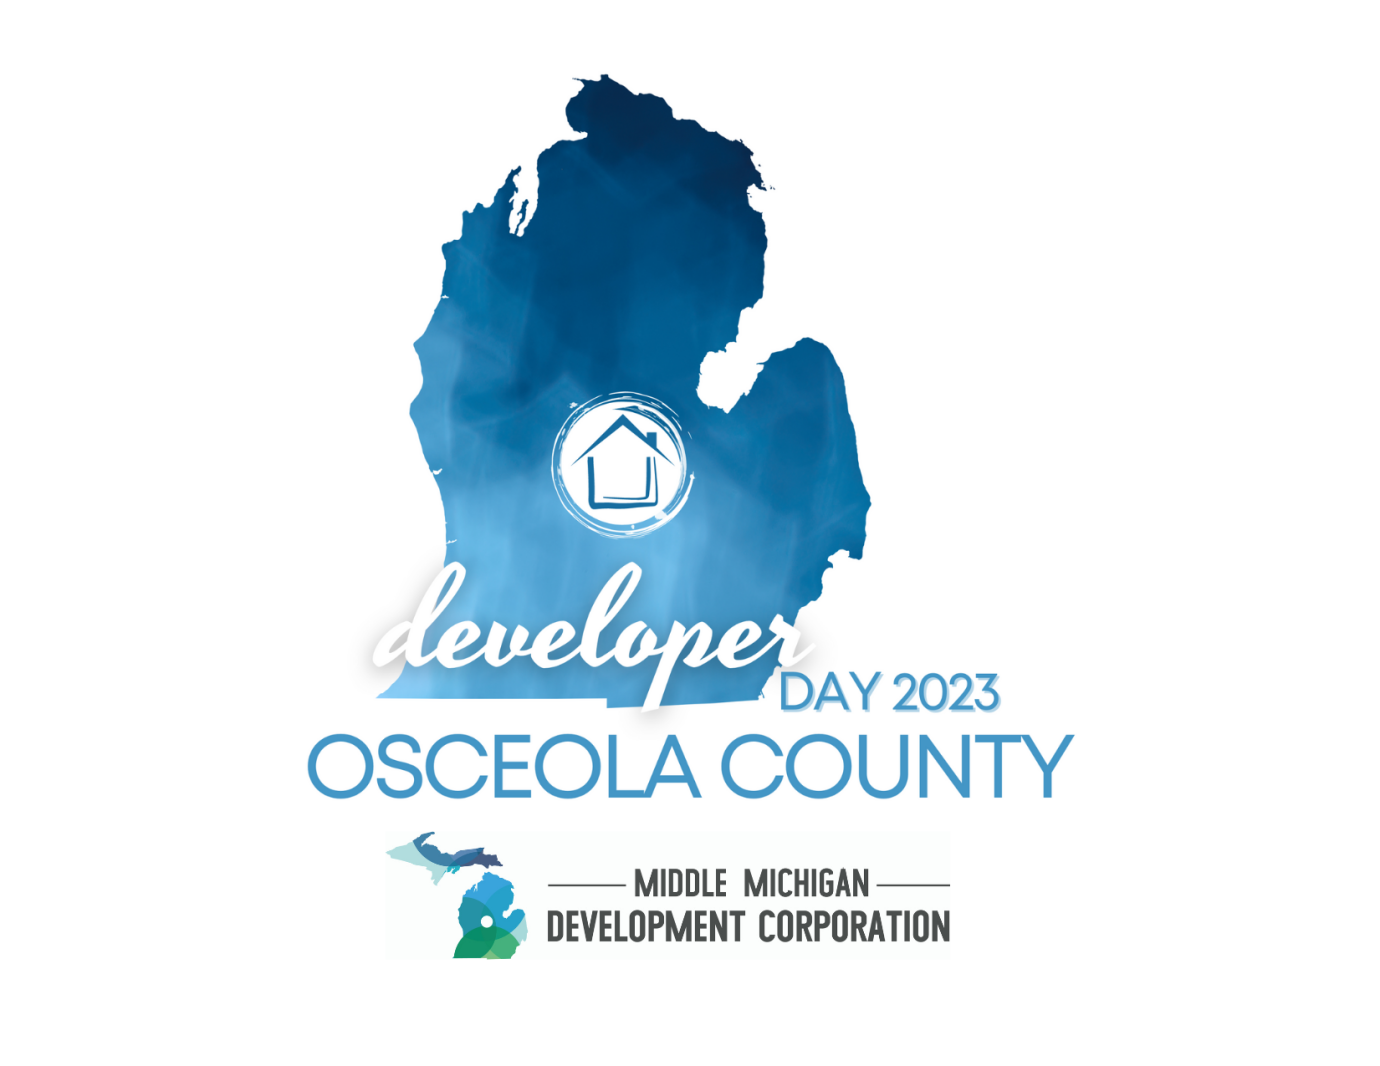 Osceola County Developer Day